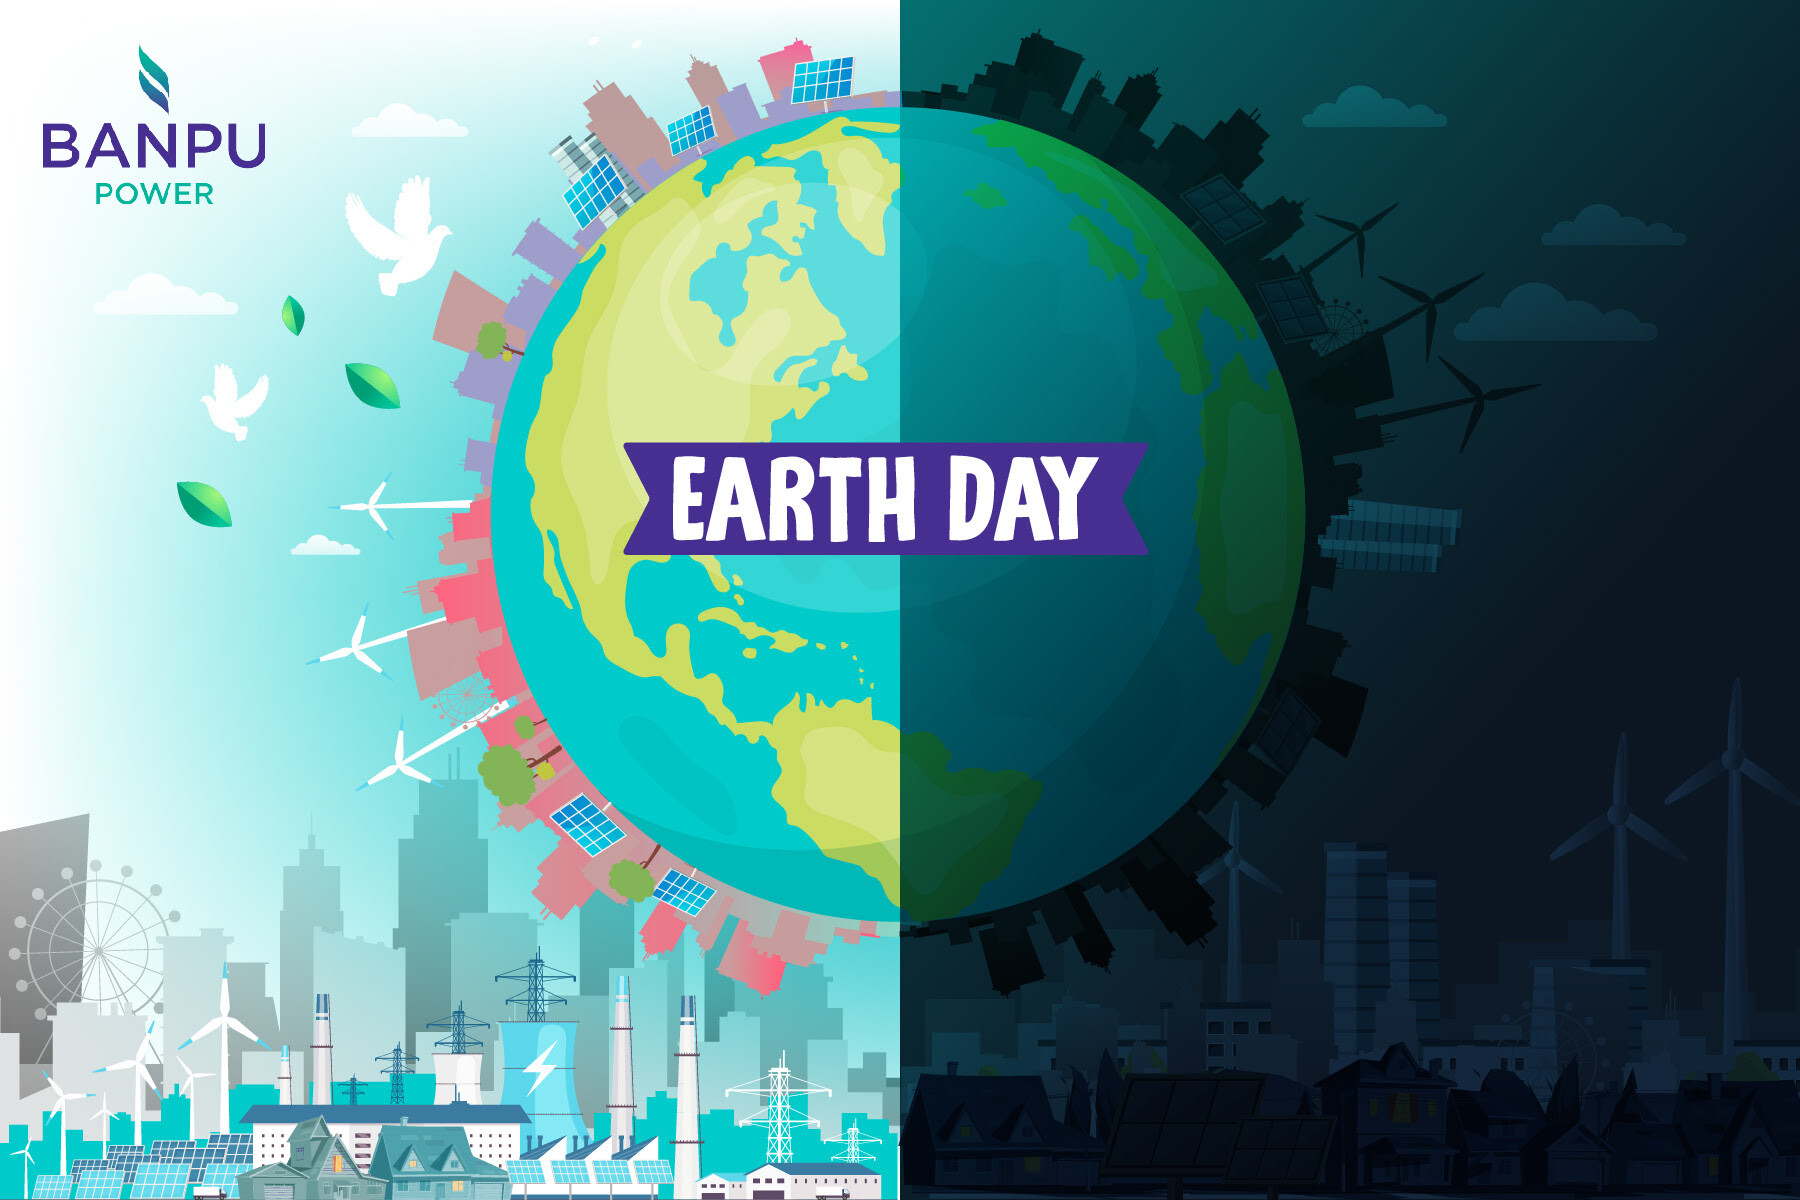 ถึงเวลา...ถอดบทเรียนรักษ์โลกในวัน Earth Day ภารกิจลดโลกร้อน ความยั่งยืนด้านพลังงาน และเหตุการณ์ไฟฟ้าดับครั้งประวัติศาสตร์  มีความสัมพันธ์กันอย่างไร?